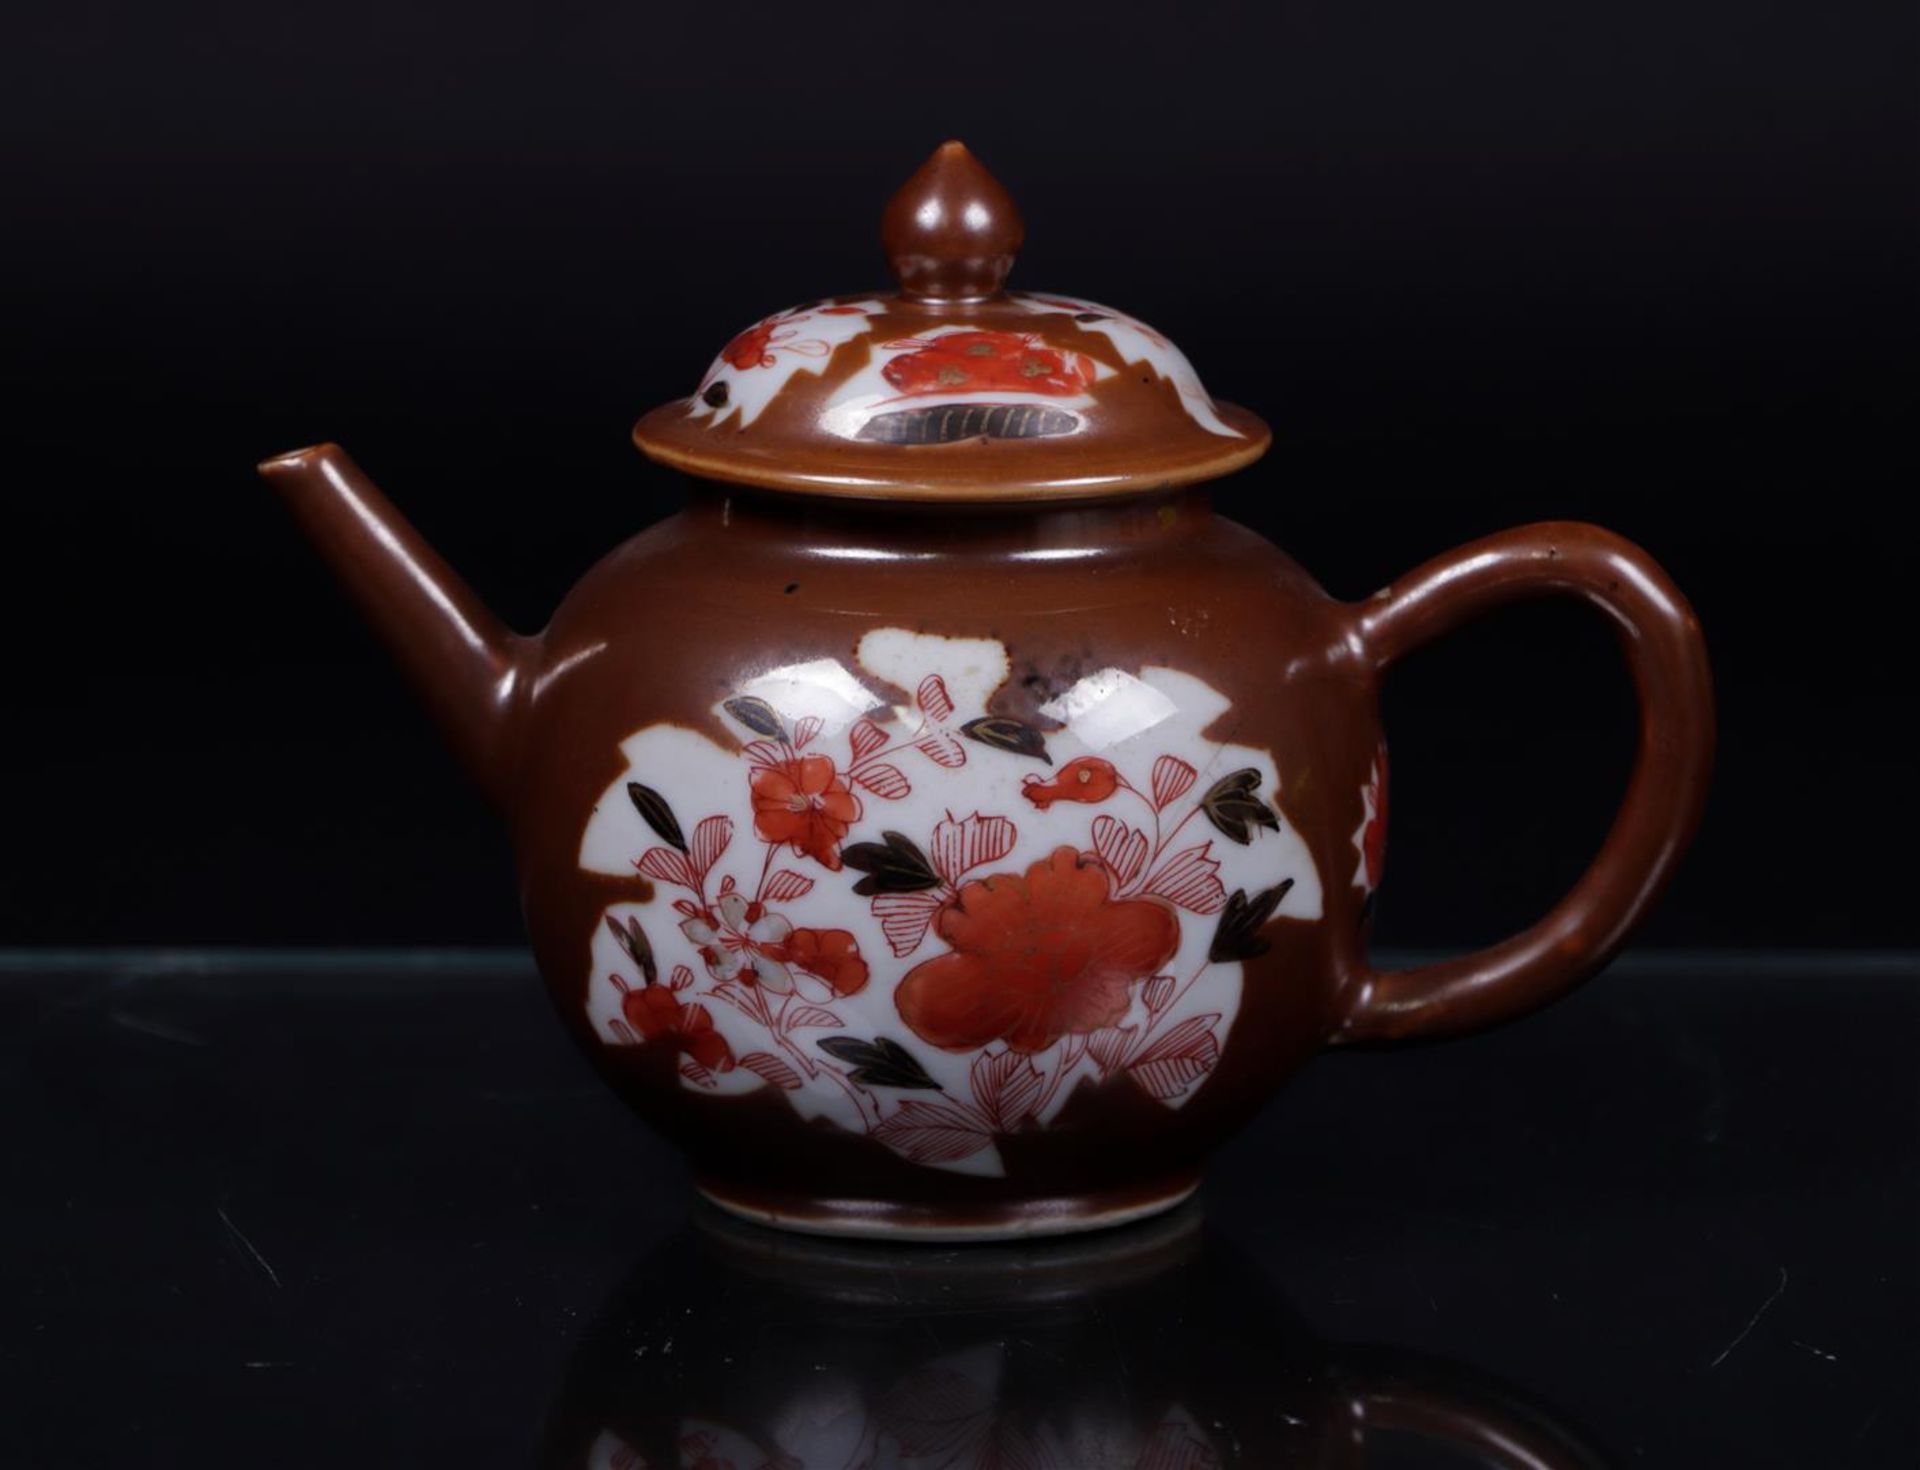 A porcelain teapot, Capuchin/Famille Rose leaf/bed decor. China, 18th century.
17 x 14 cm. - Bild 2 aus 3